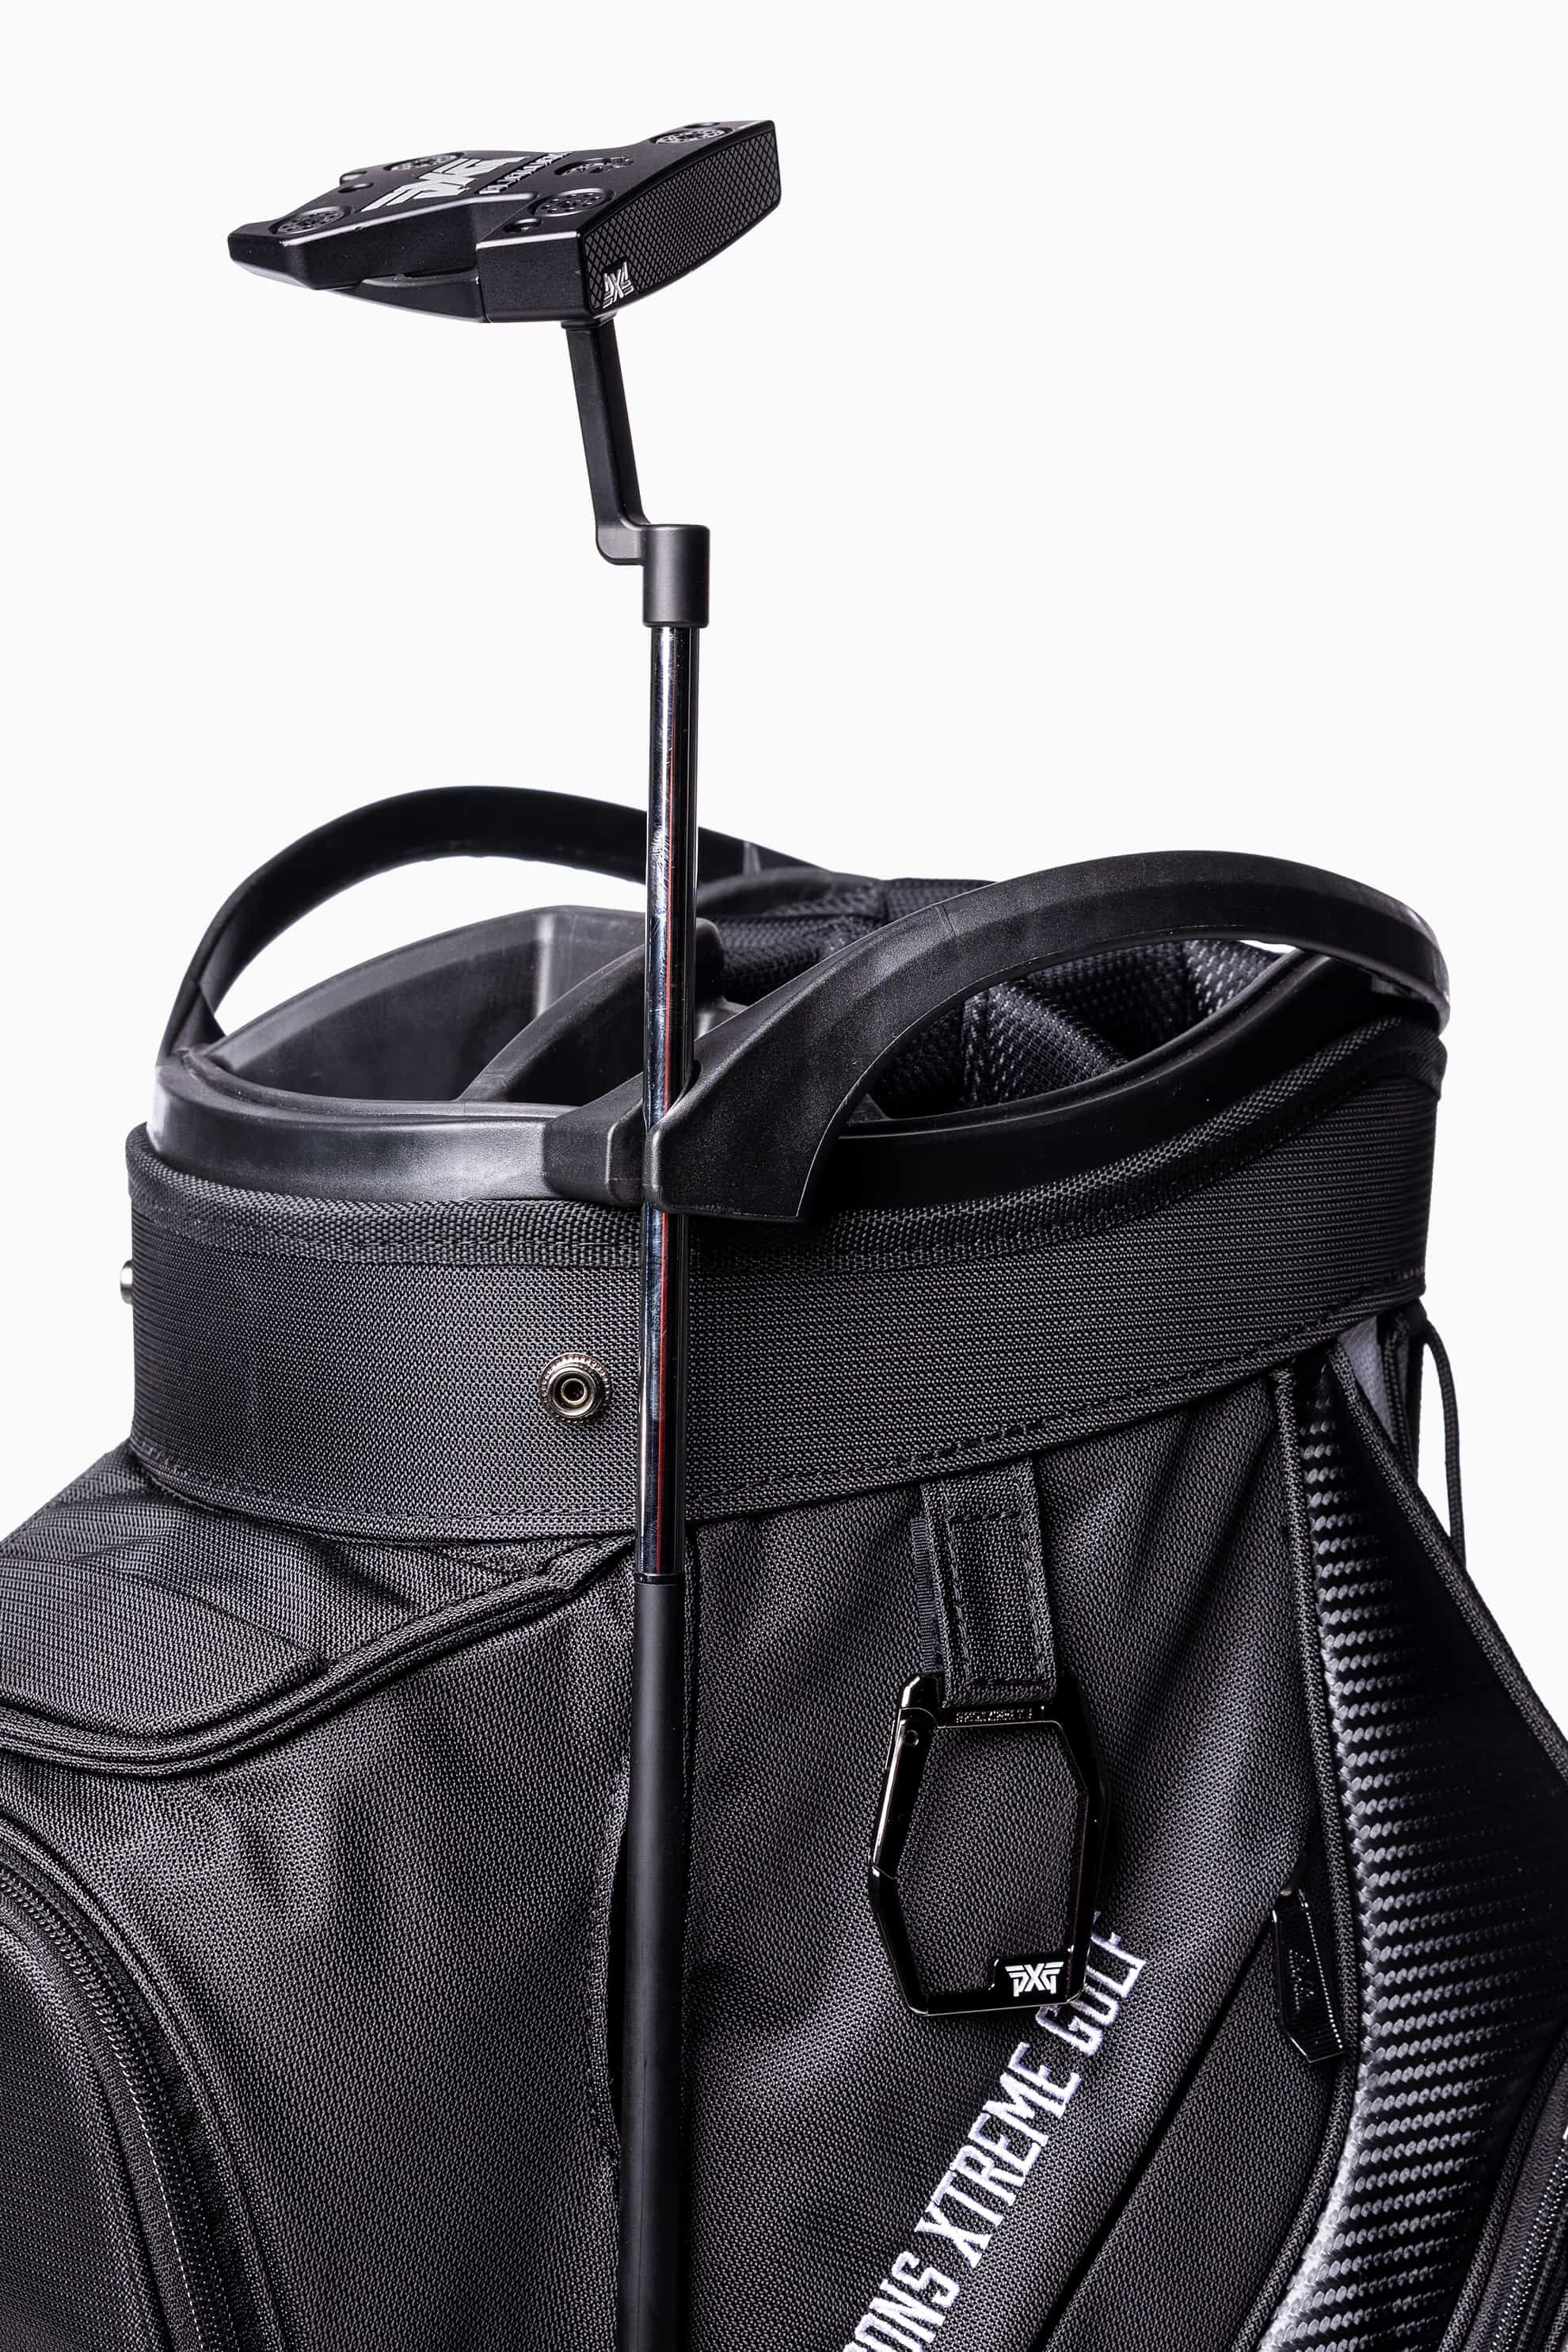 Lightweight Cart Bag | Golf Bags | Standing, Carry & Cart Bags - PXG